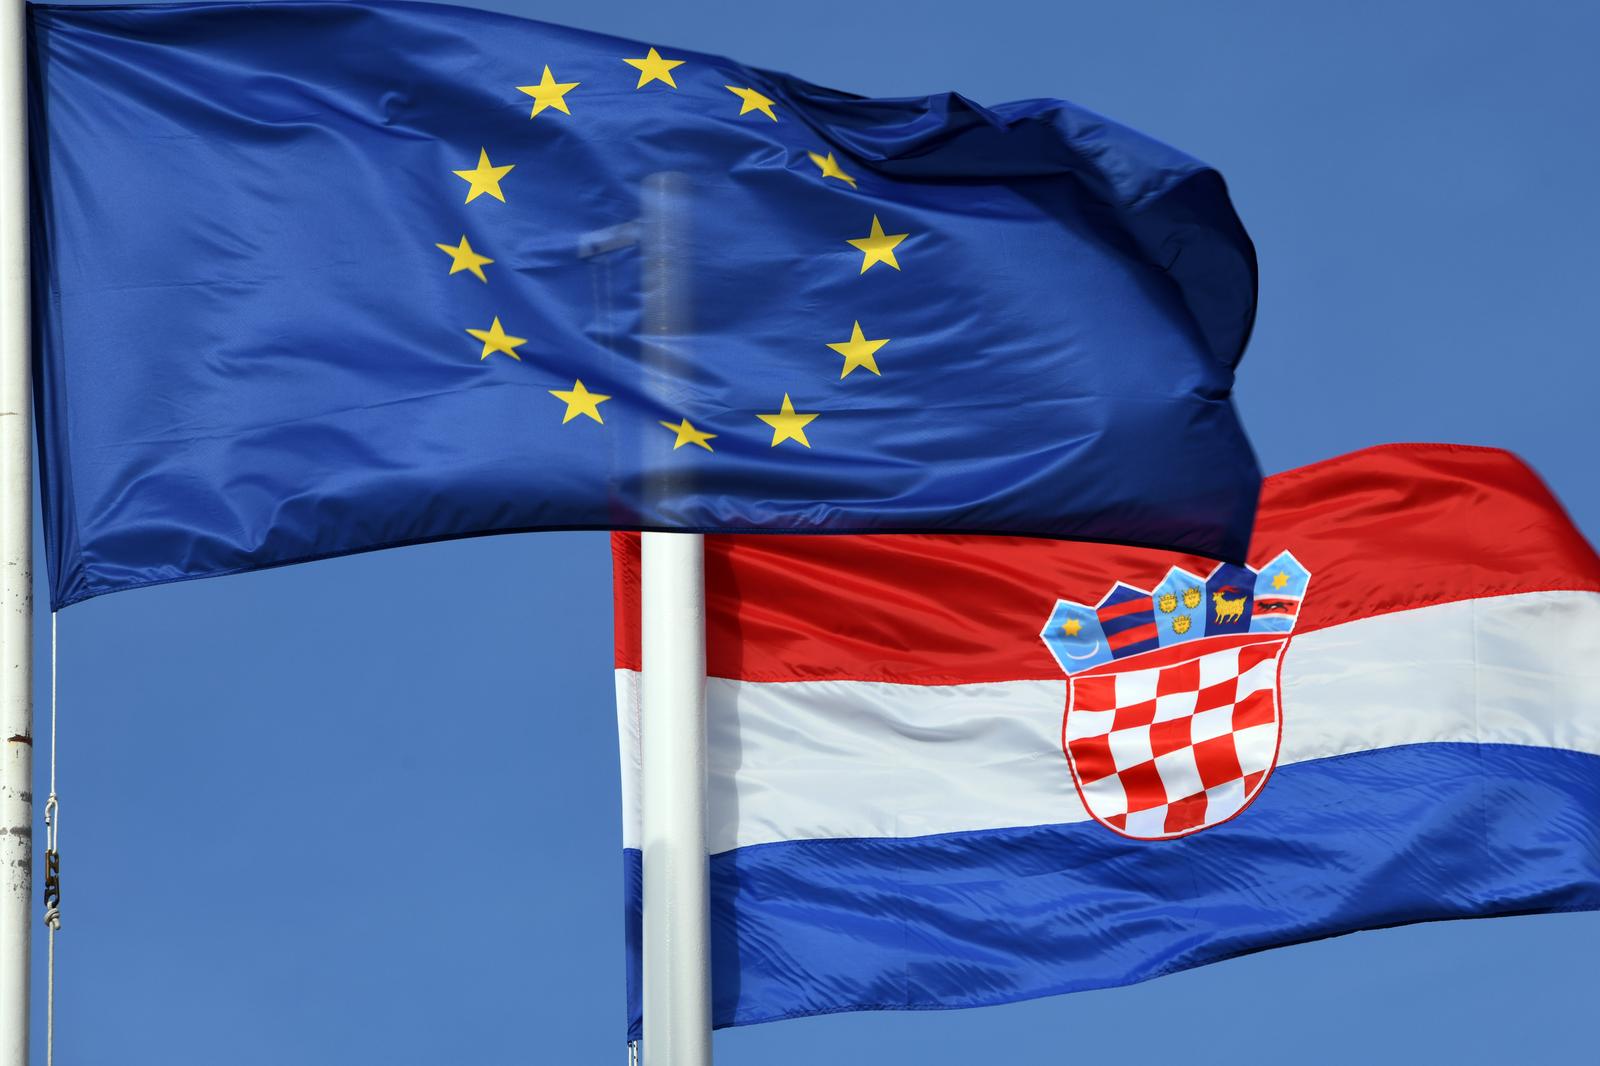 09.04.2022., Sibenik - Zastava Europske unije i Republike Hrvatske.  Photo: Hrvoje Jelavic/PIXSELL